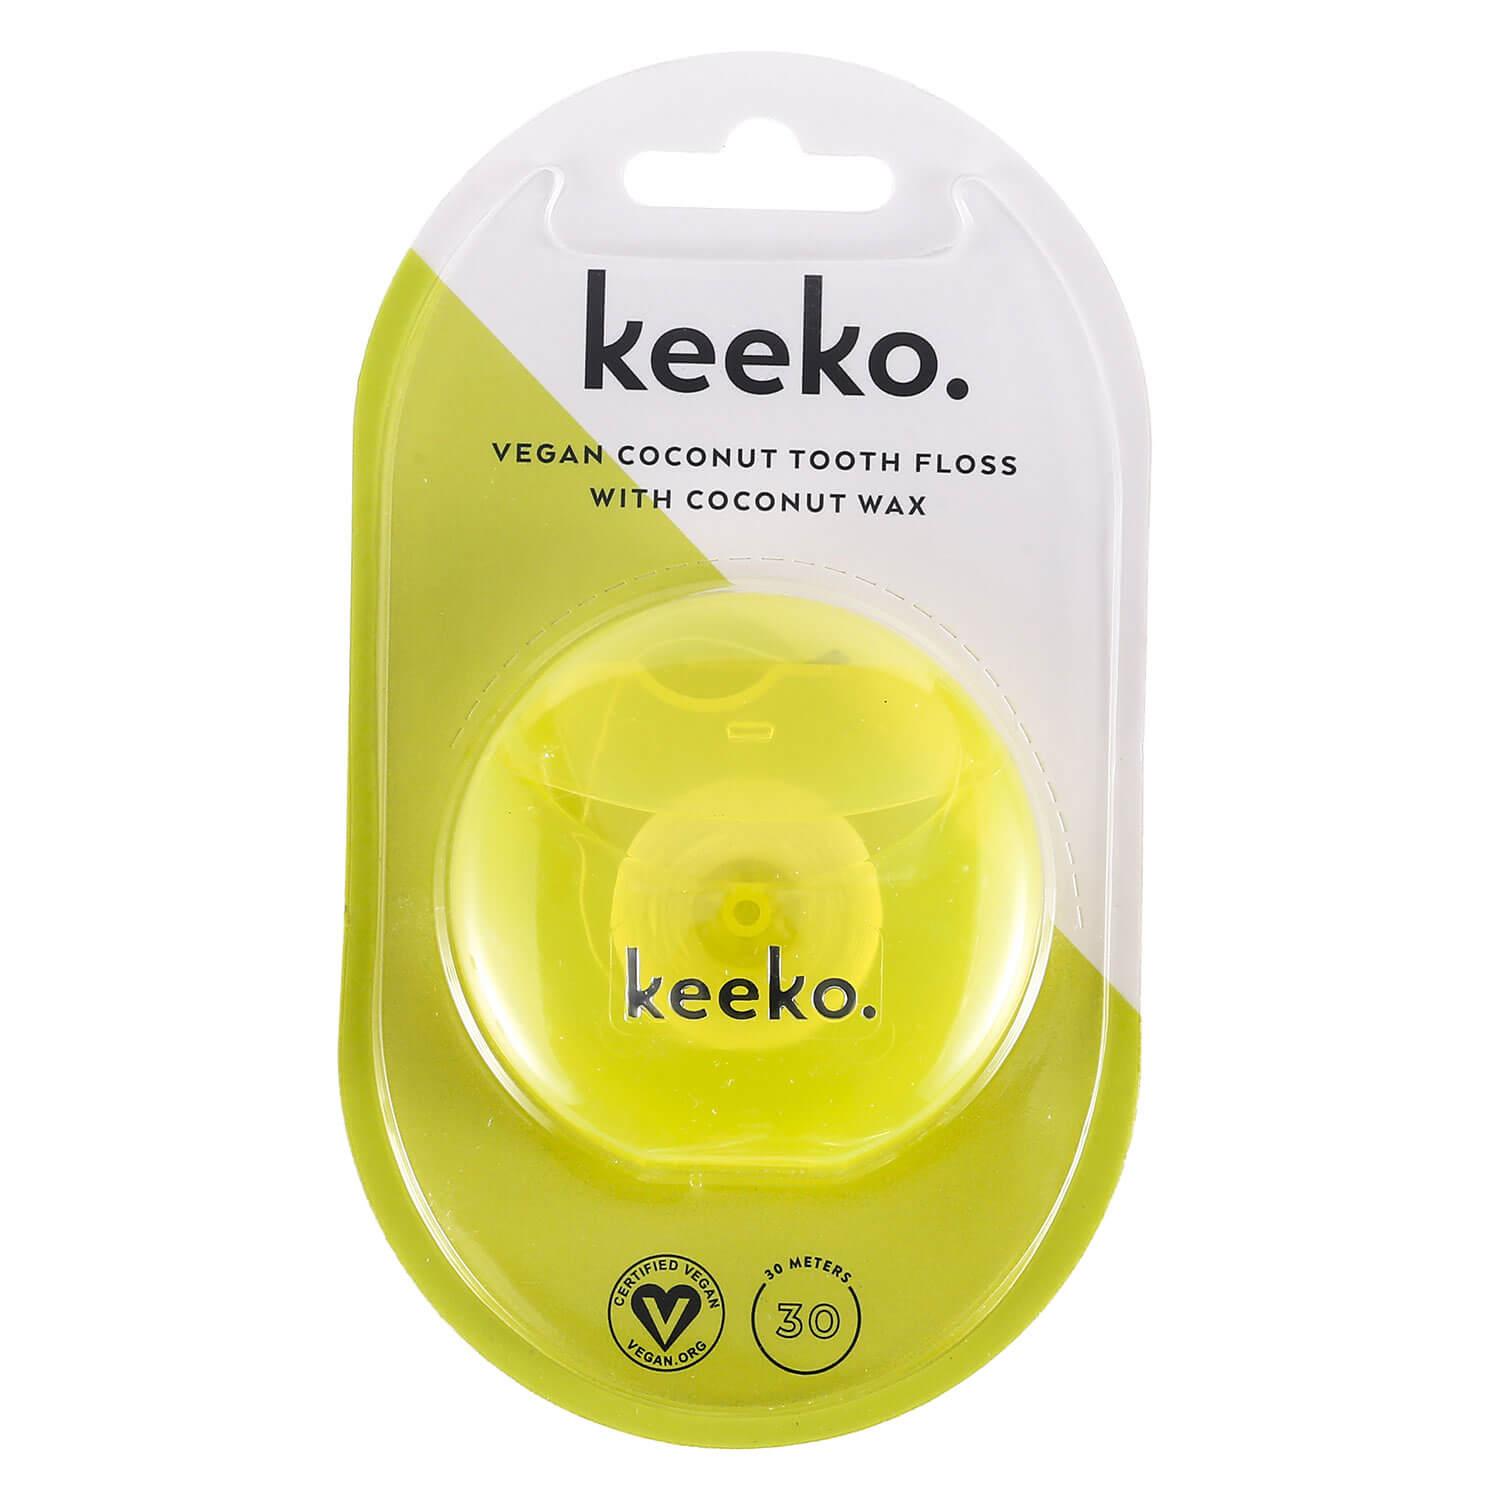 keeko - Kokosnuss Zahnseide